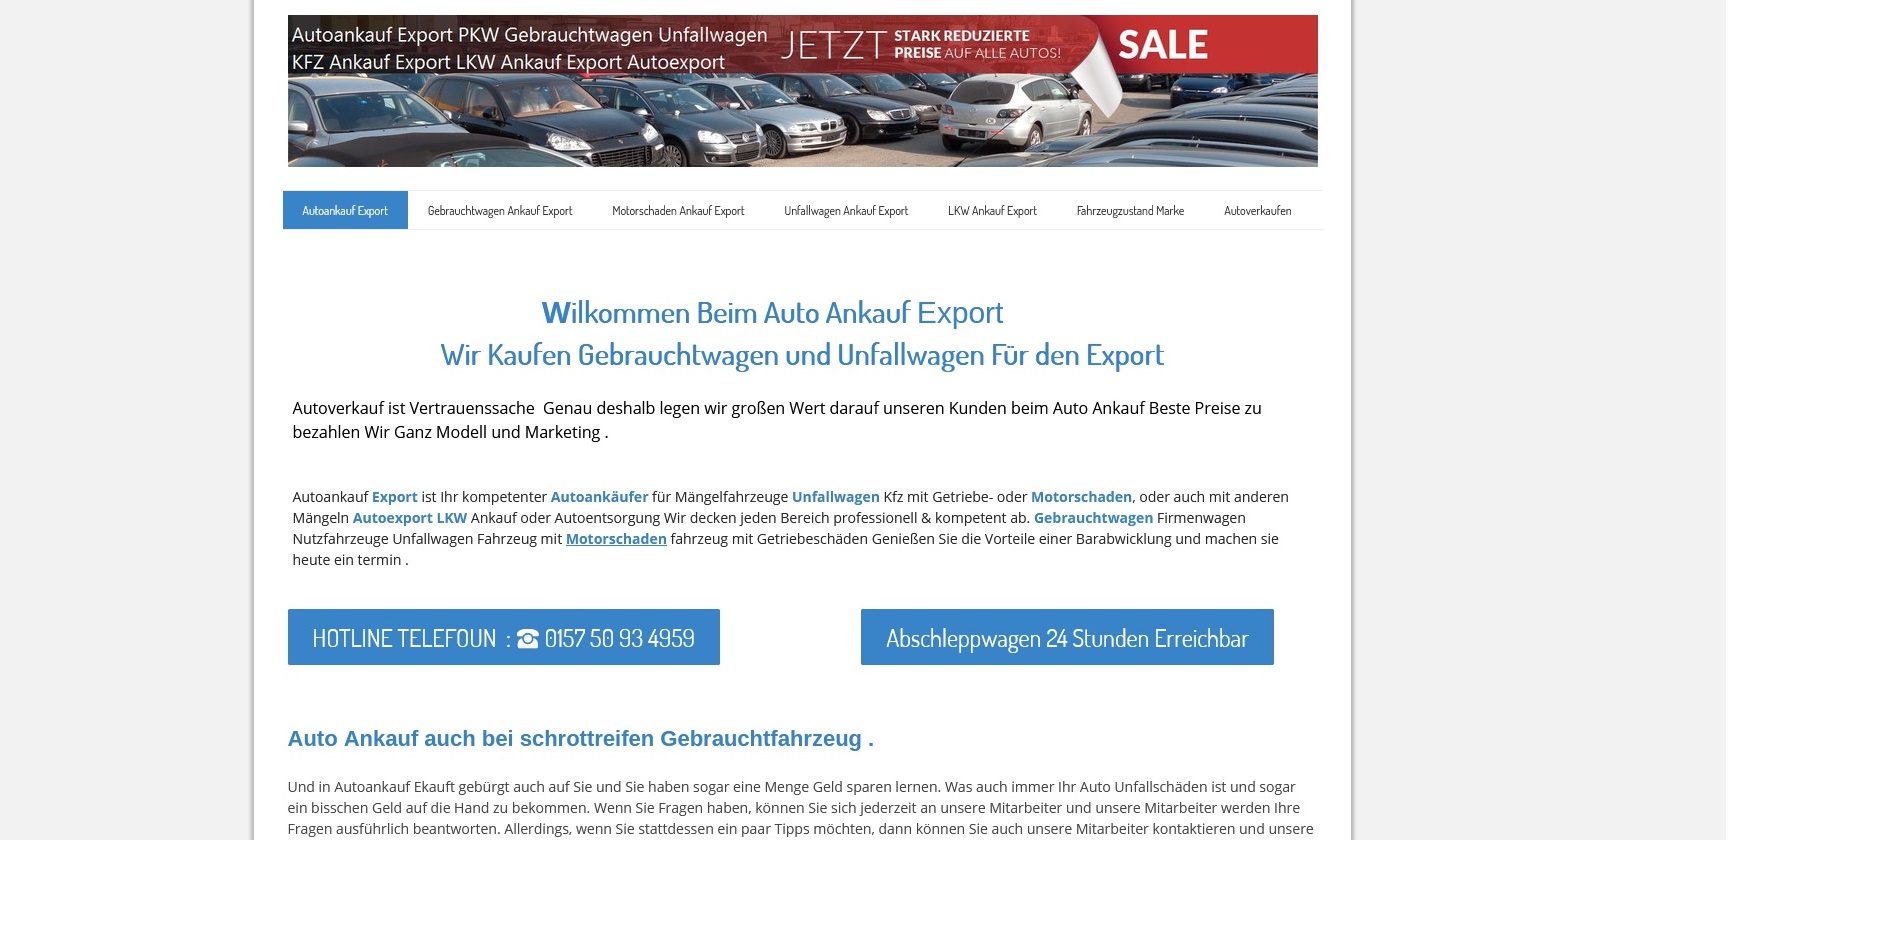 Kfz-Ankauf-export.de | Autoankauf Fürth | Autoankauf Export Fürth